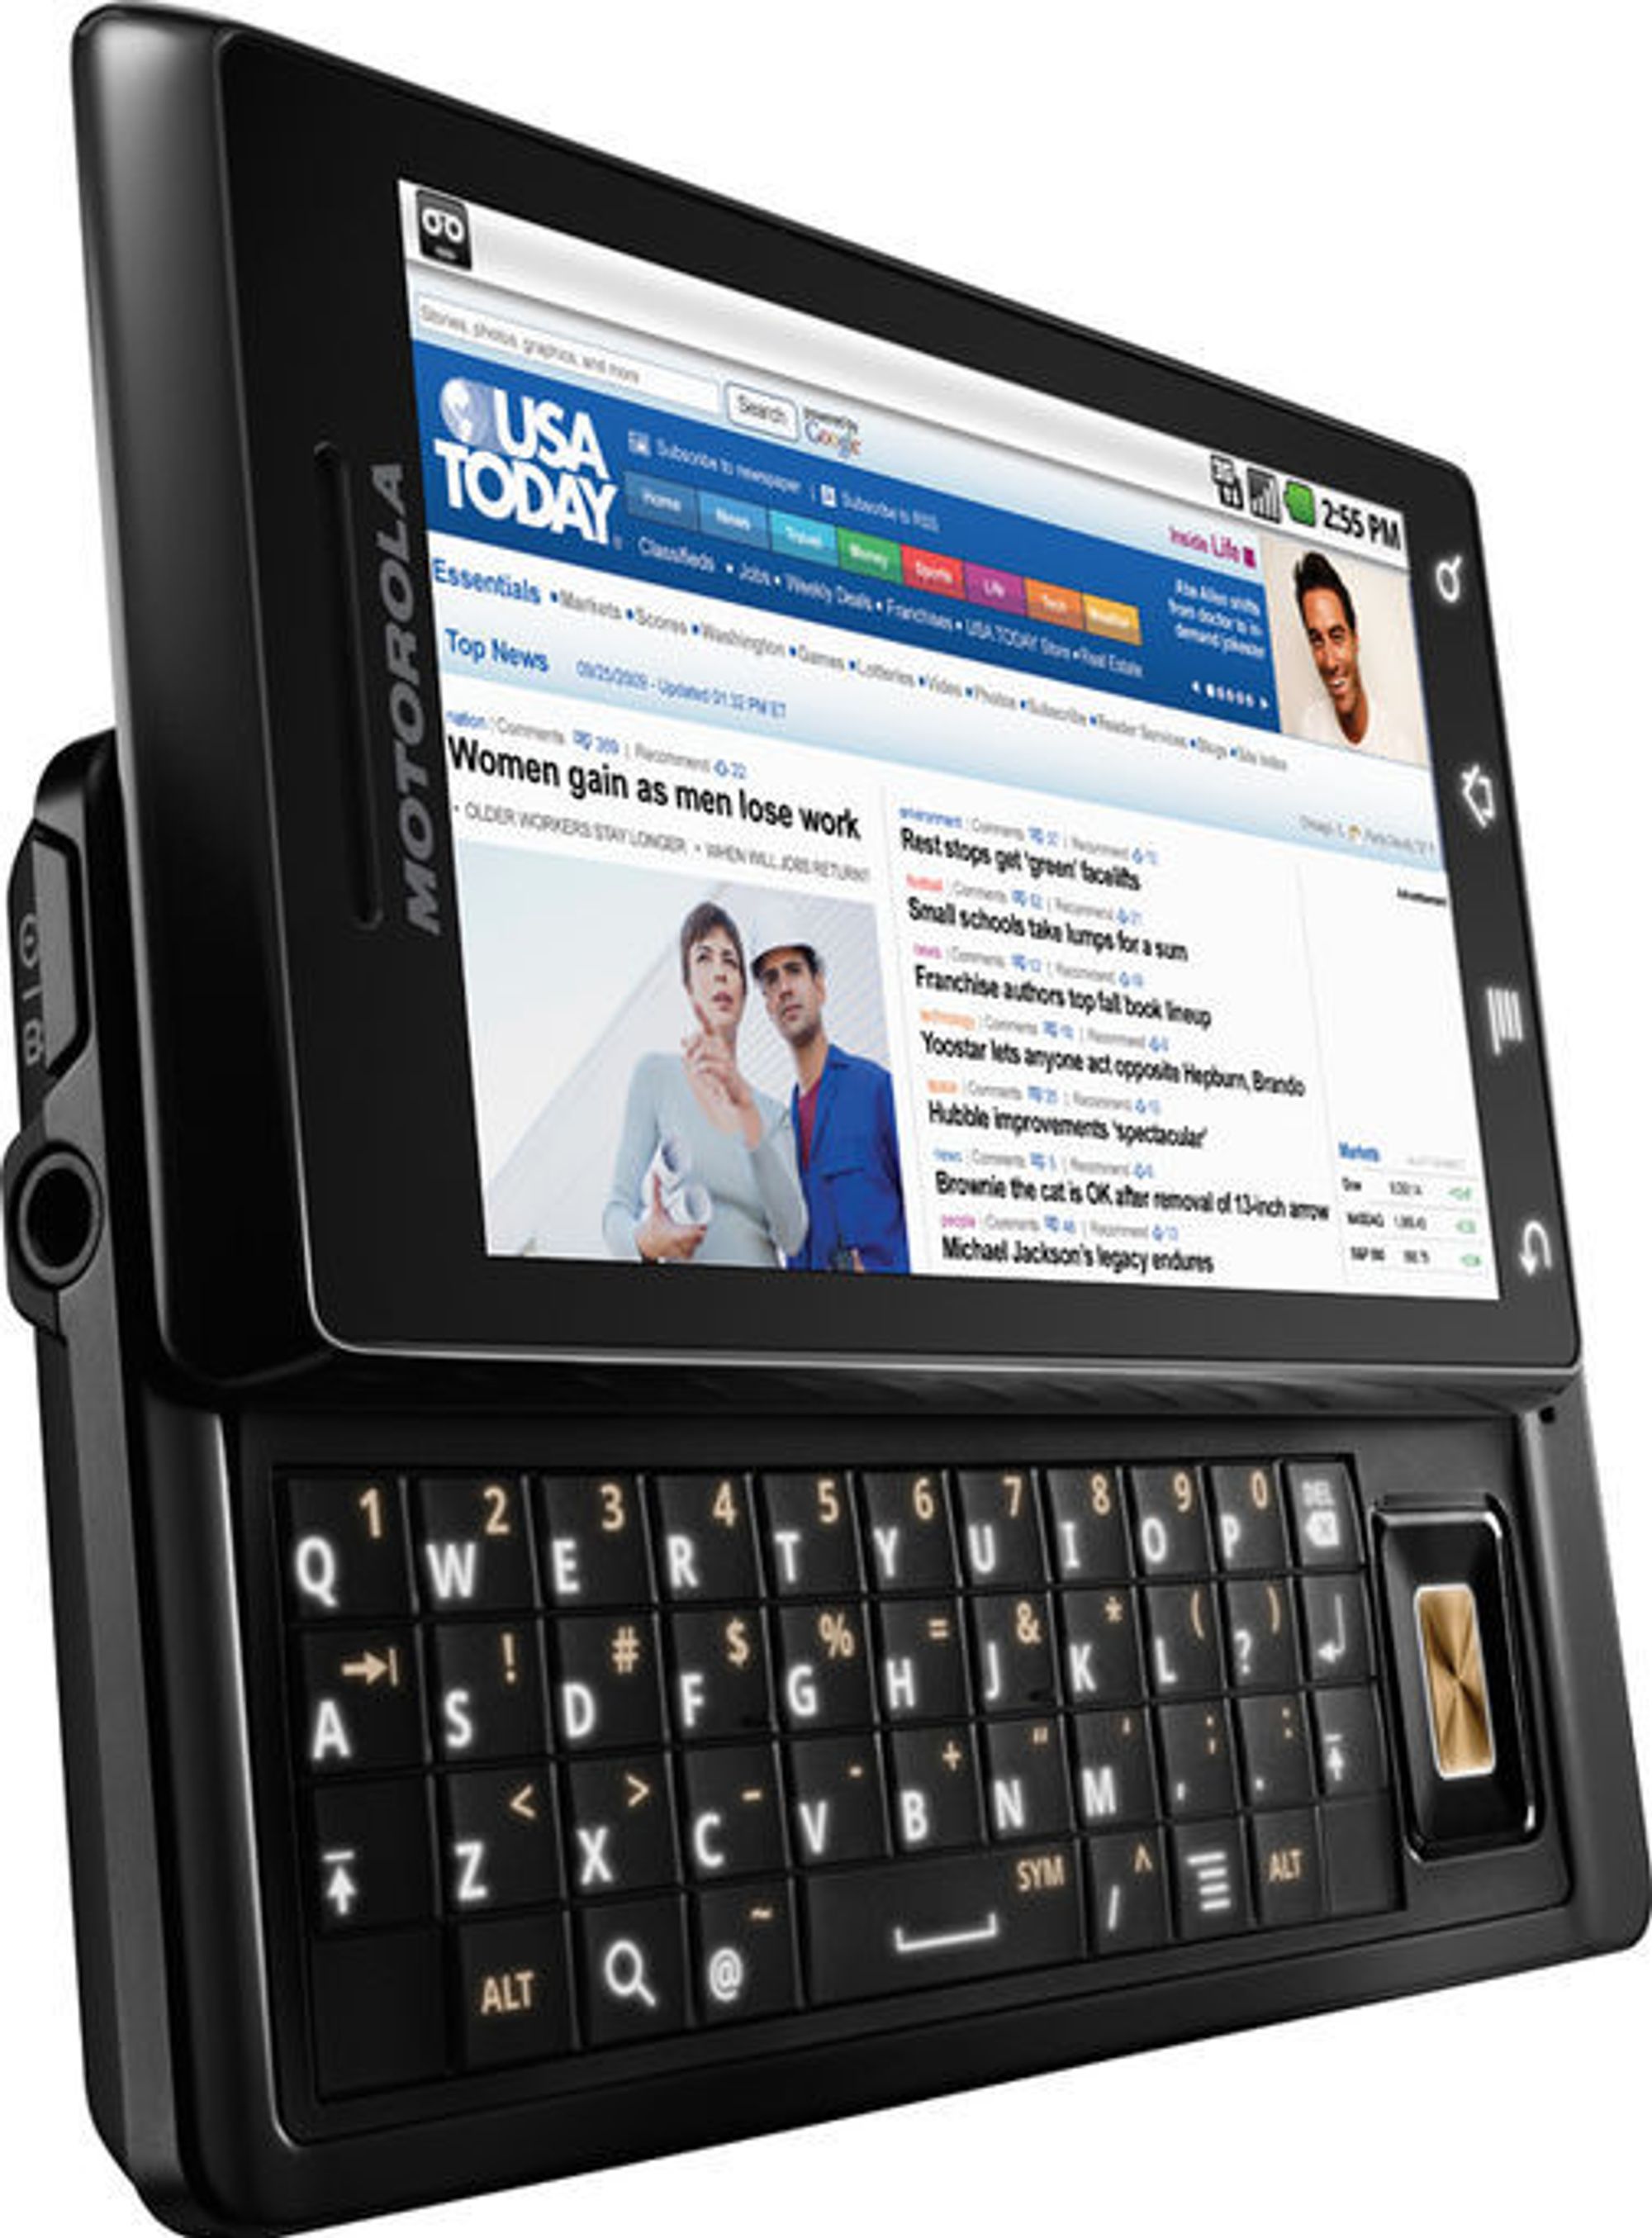 Motorola Droid blir den første mobiltelefonen på markedet som tar i bruk Android 2.0.